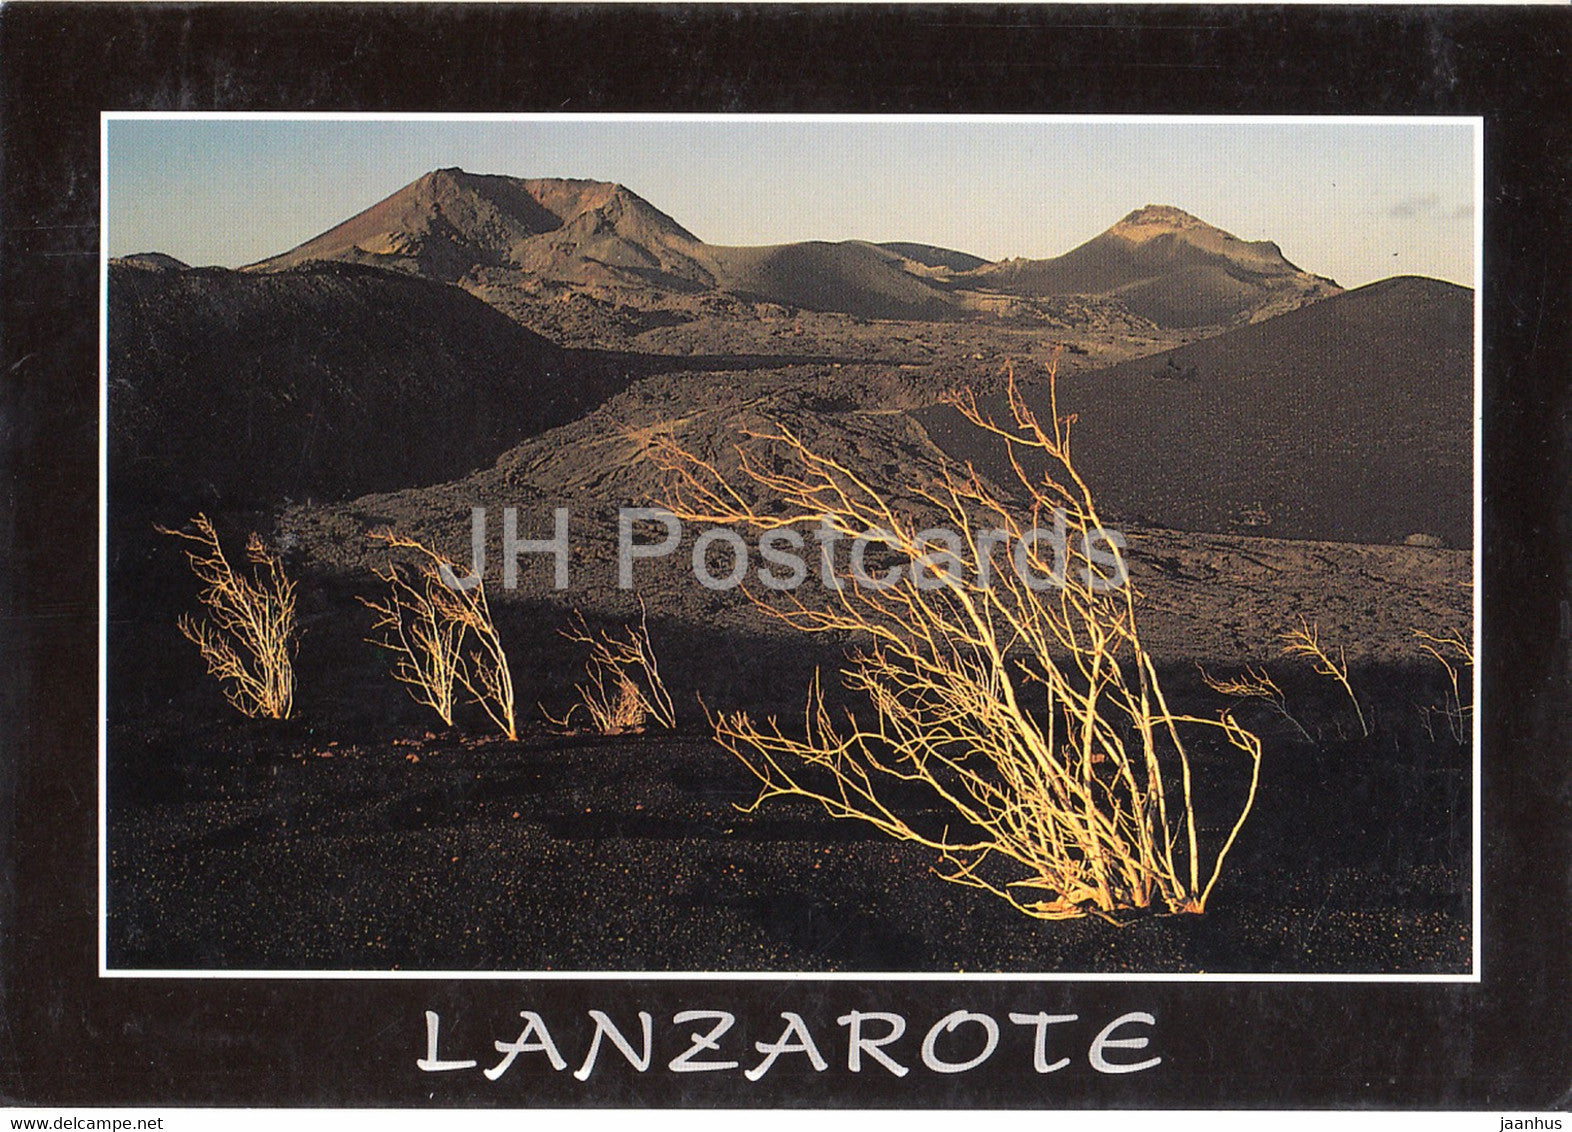 Lanzarote - Montanas del Fuego - 49566 - 1999 - Spain - used - JH Postcards